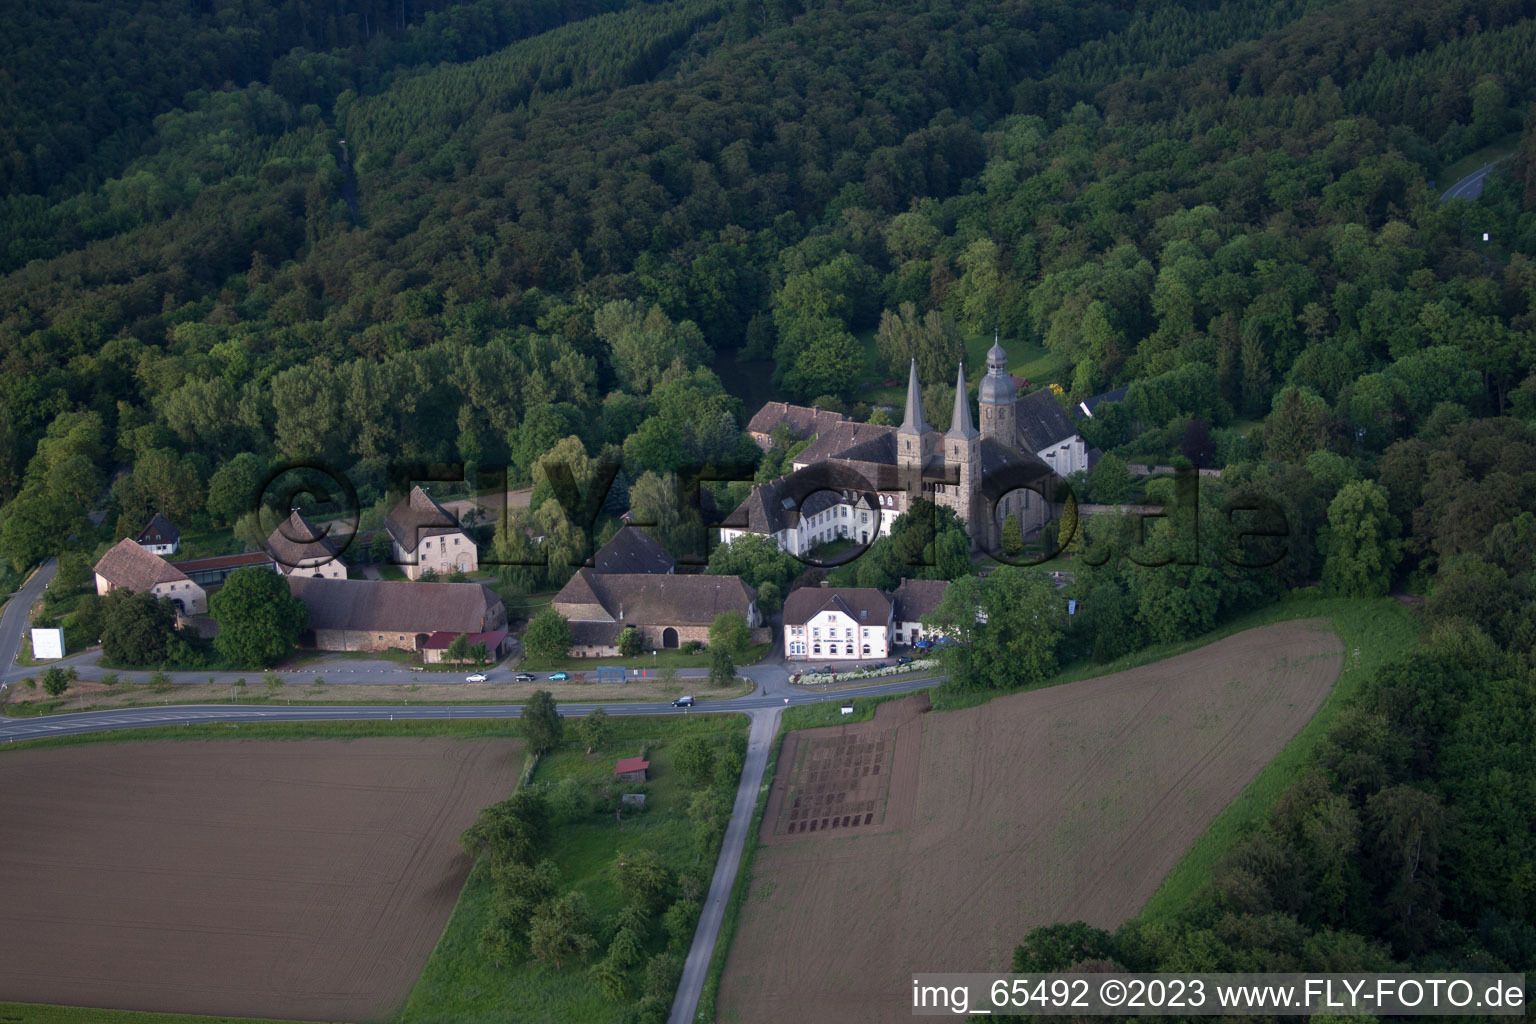 Luftbild von Gebäudekomplex des Klosters Abtei Marienmünster in Marienmünster im Bundesland Nordrhein-Westfalen, Deutschland